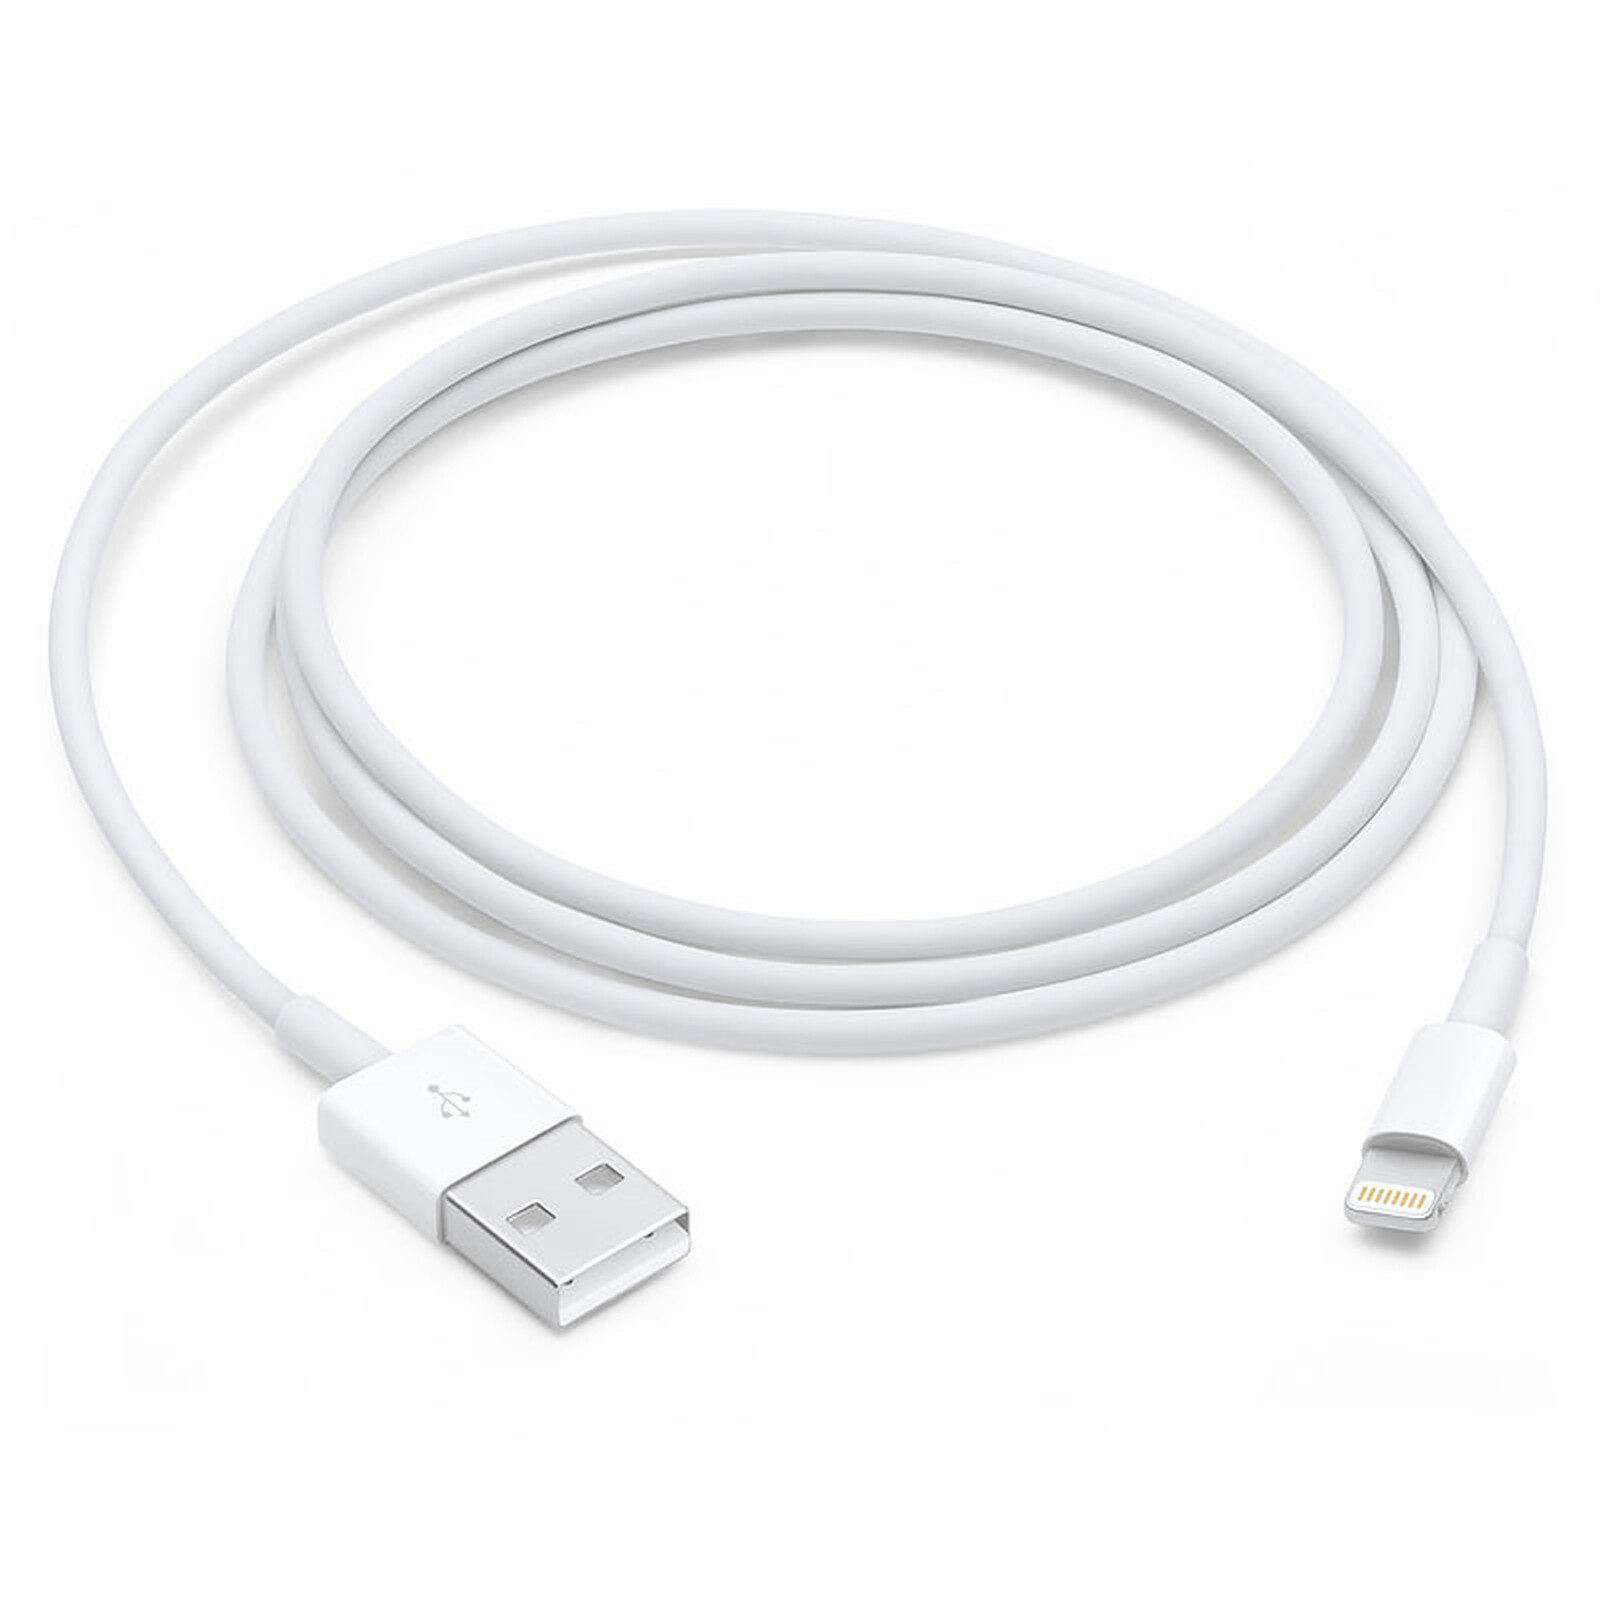 Cable de datos y carga para iPhone, iPad y iPod